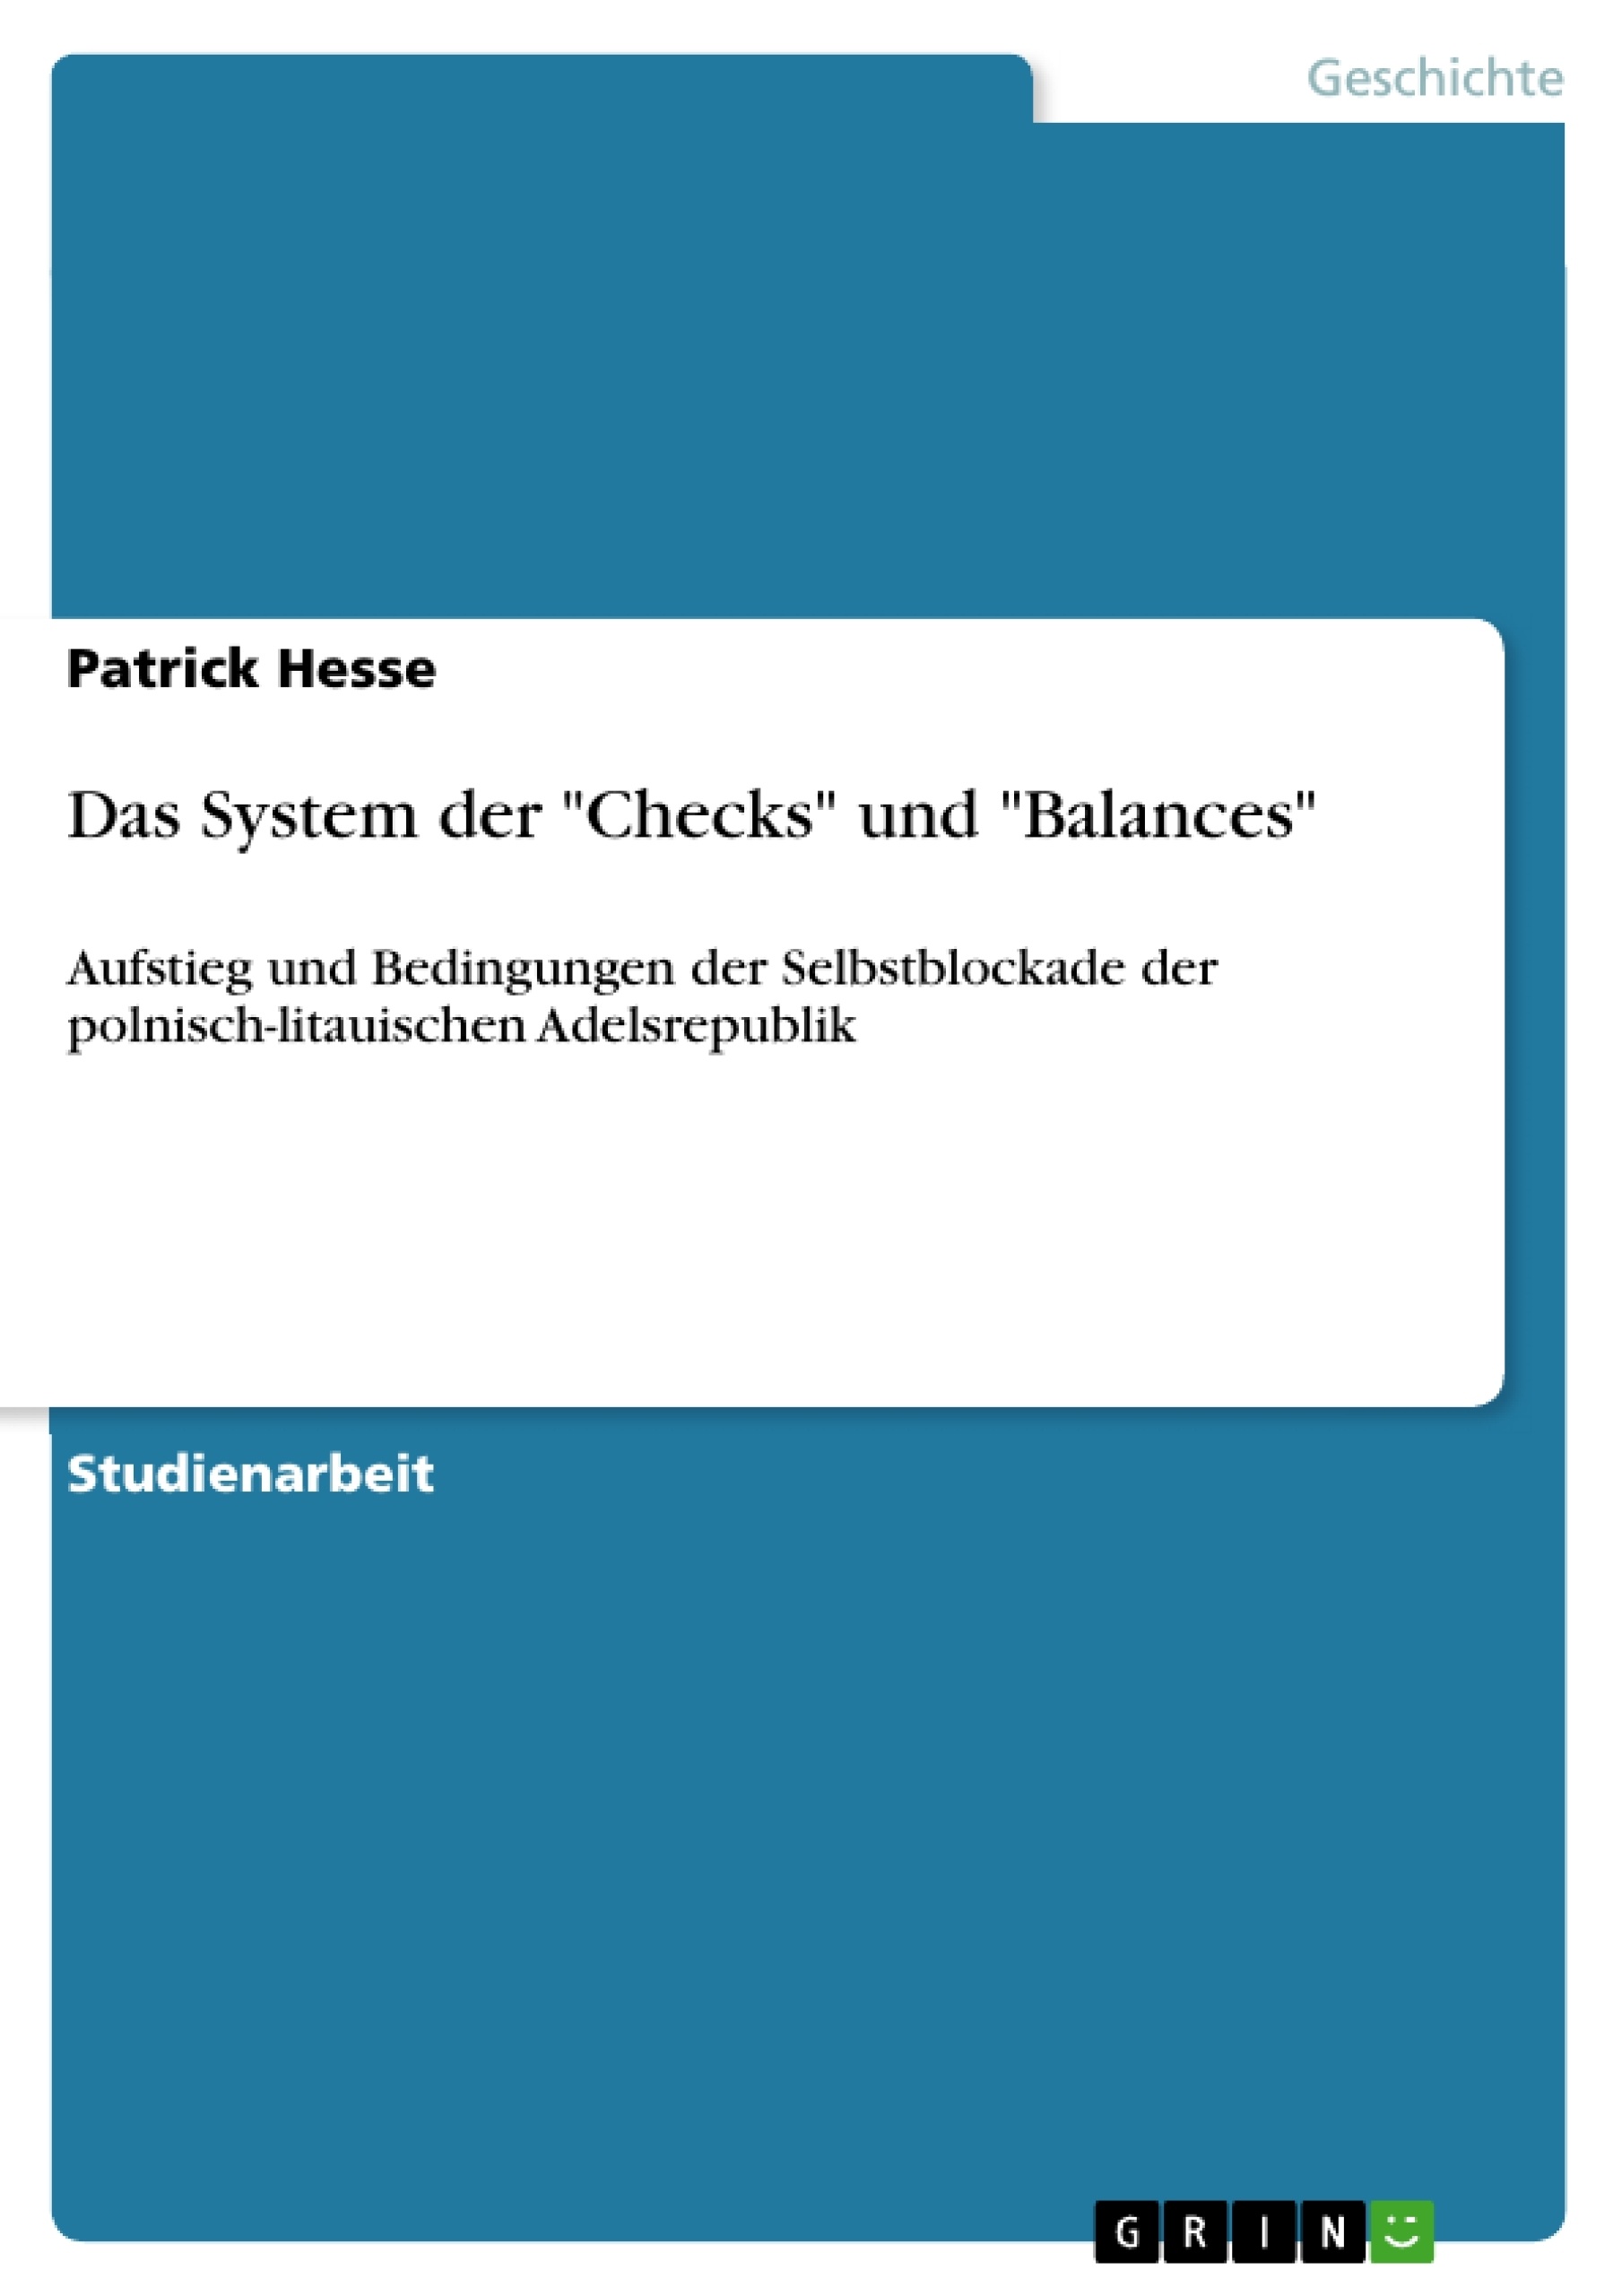 Título: Das System der "Checks" und "Balances"